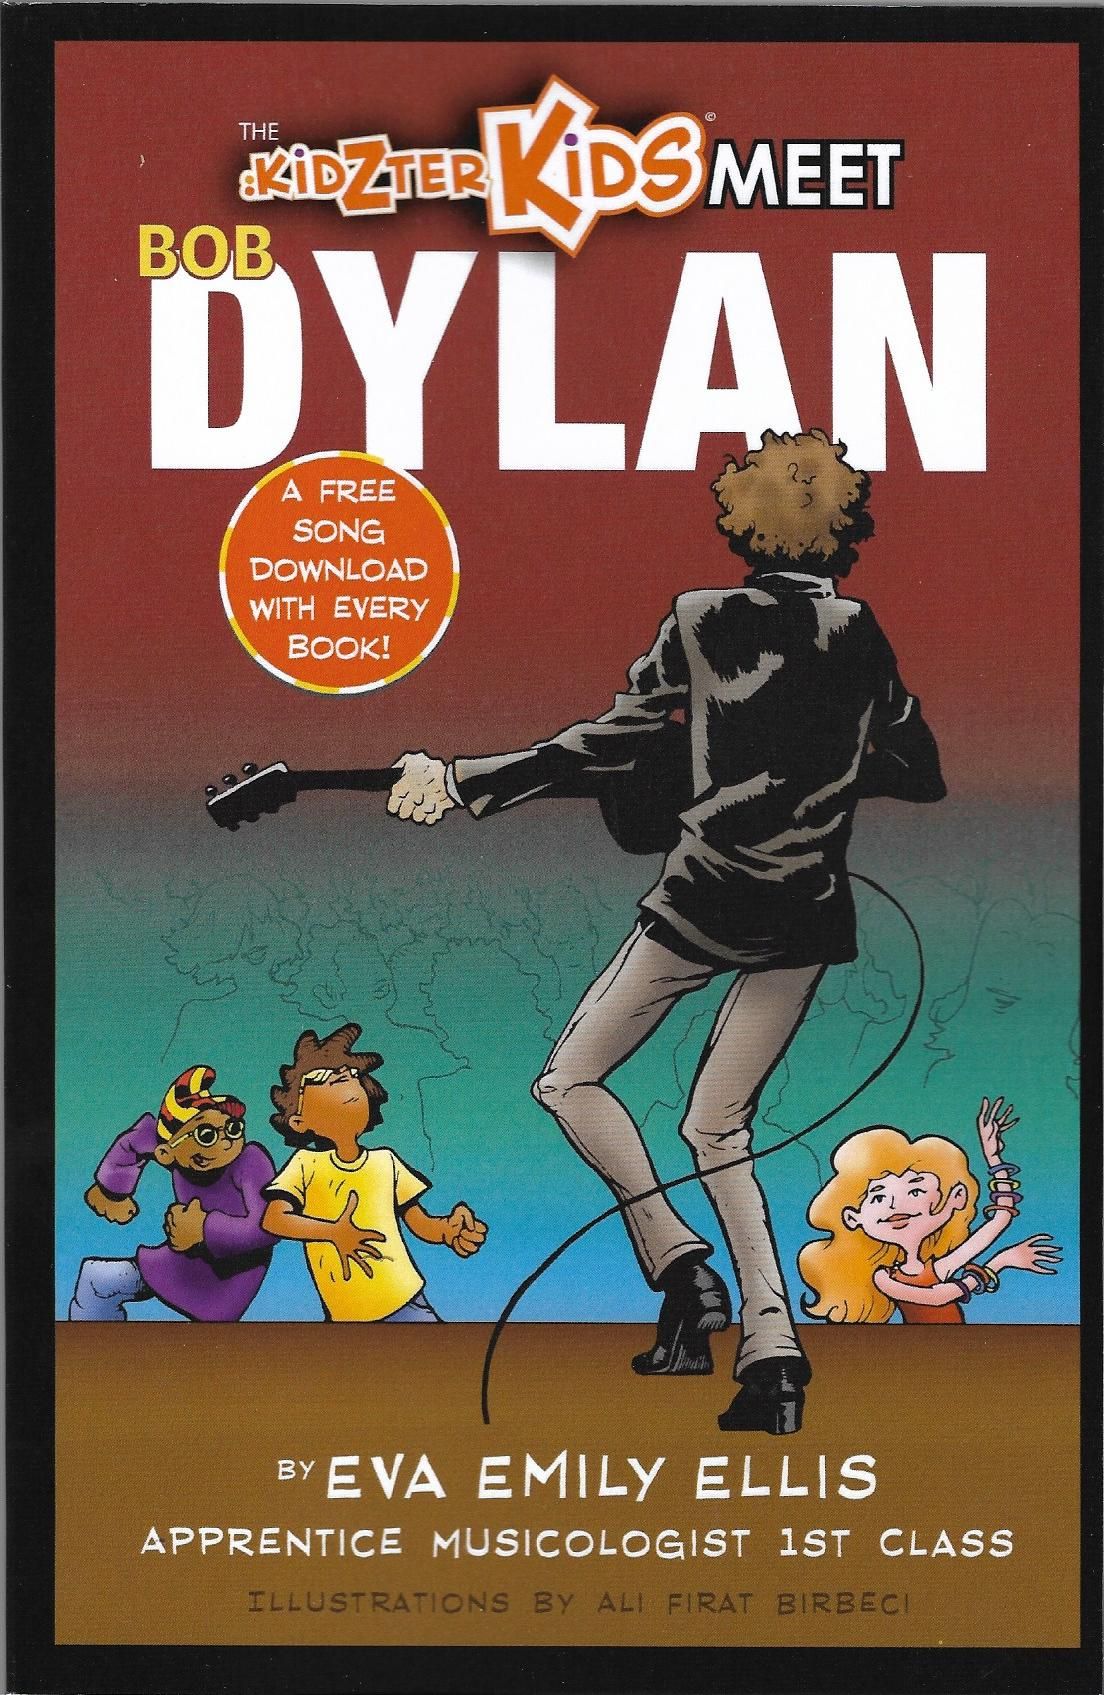 kidzer kids meet Bob Dylan book